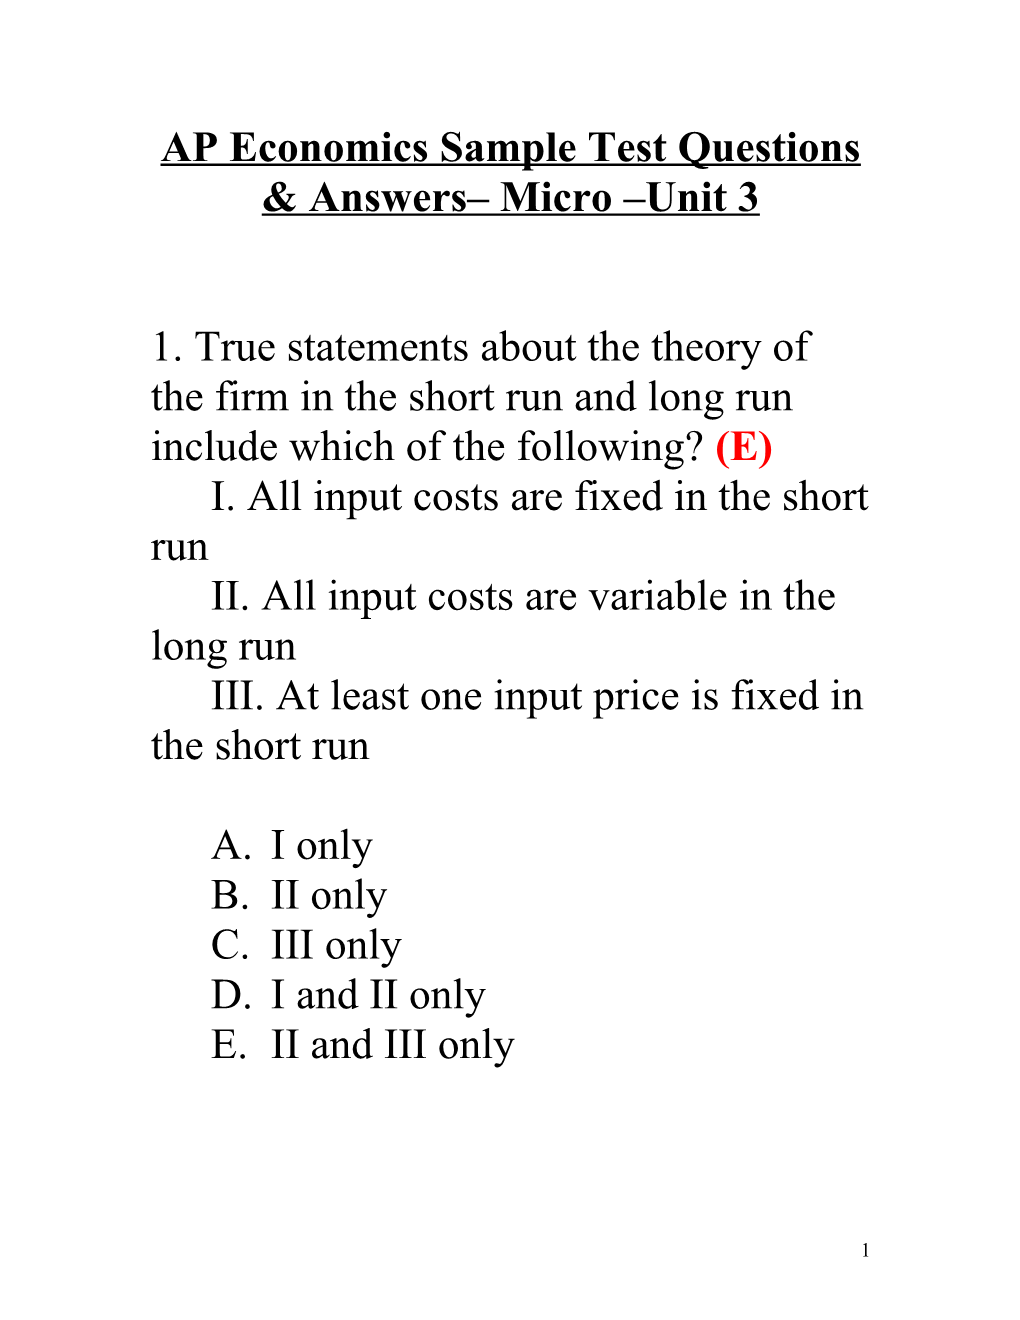 AP Economics Sample Test Questions & Answers Micro Unit 3